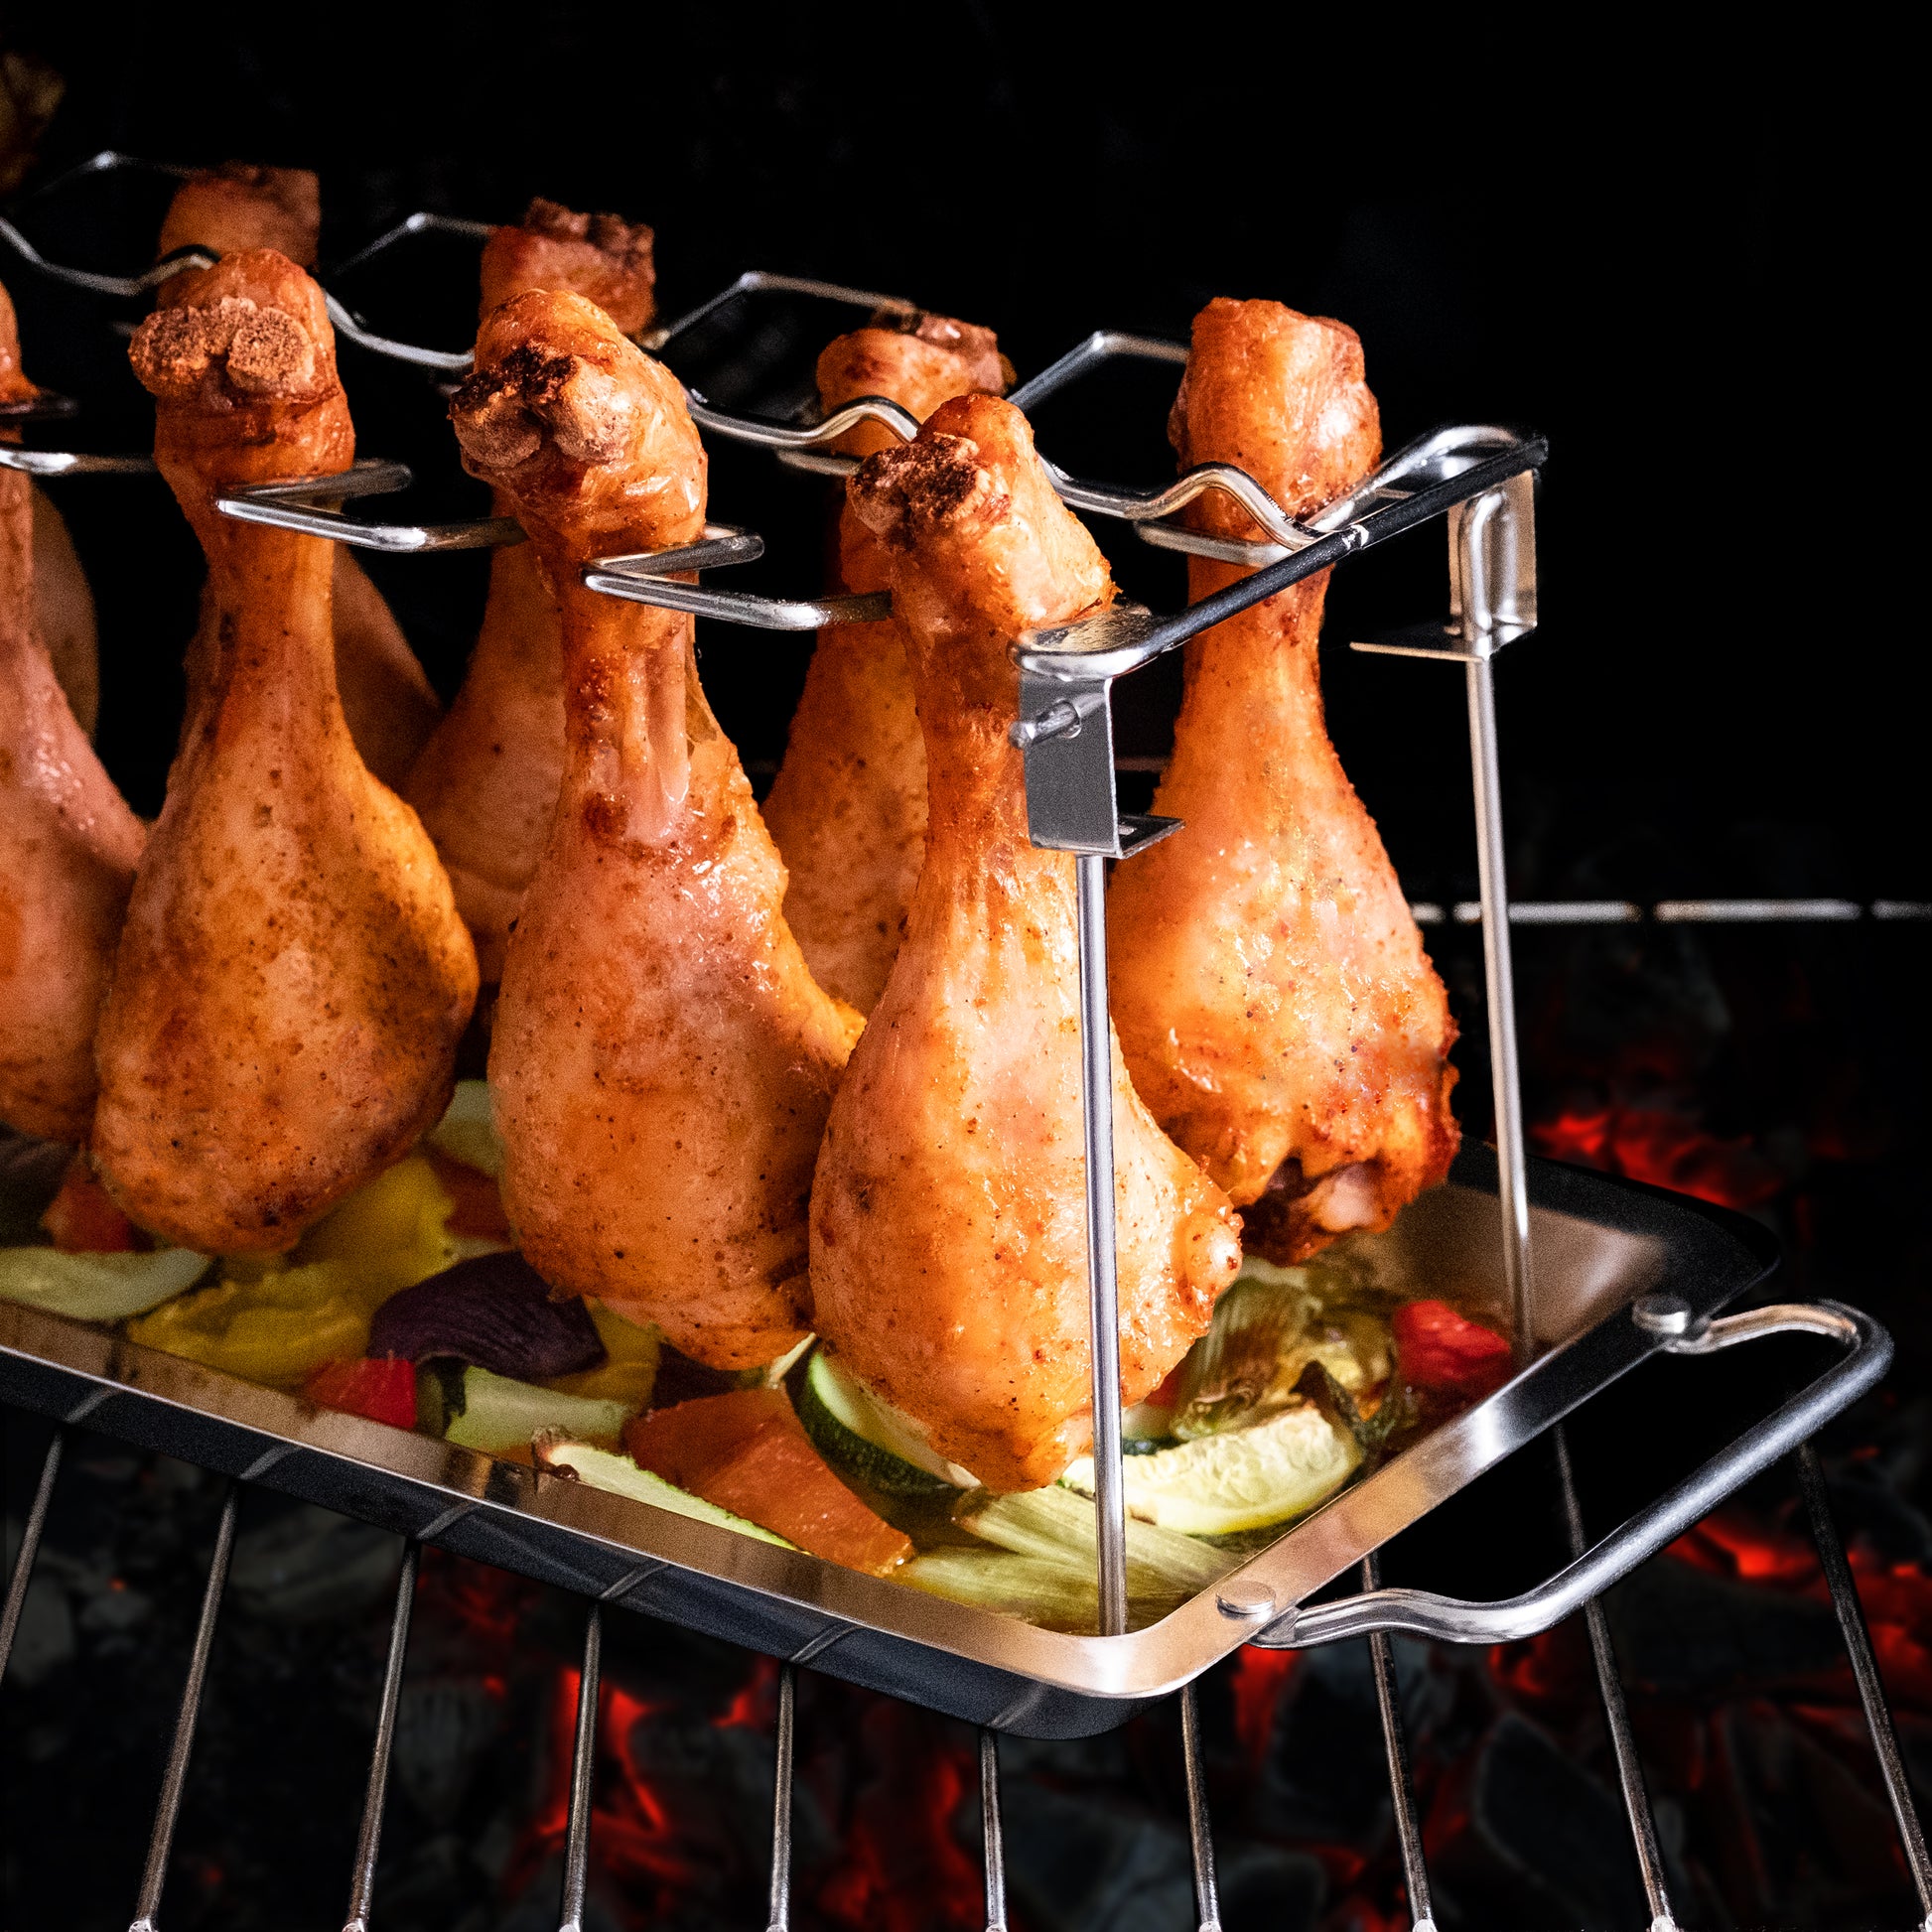 Hühnerbeine auf einem Ständer, der auf einem Grill über glühender Kohle steht, mit Gemüse darunter.